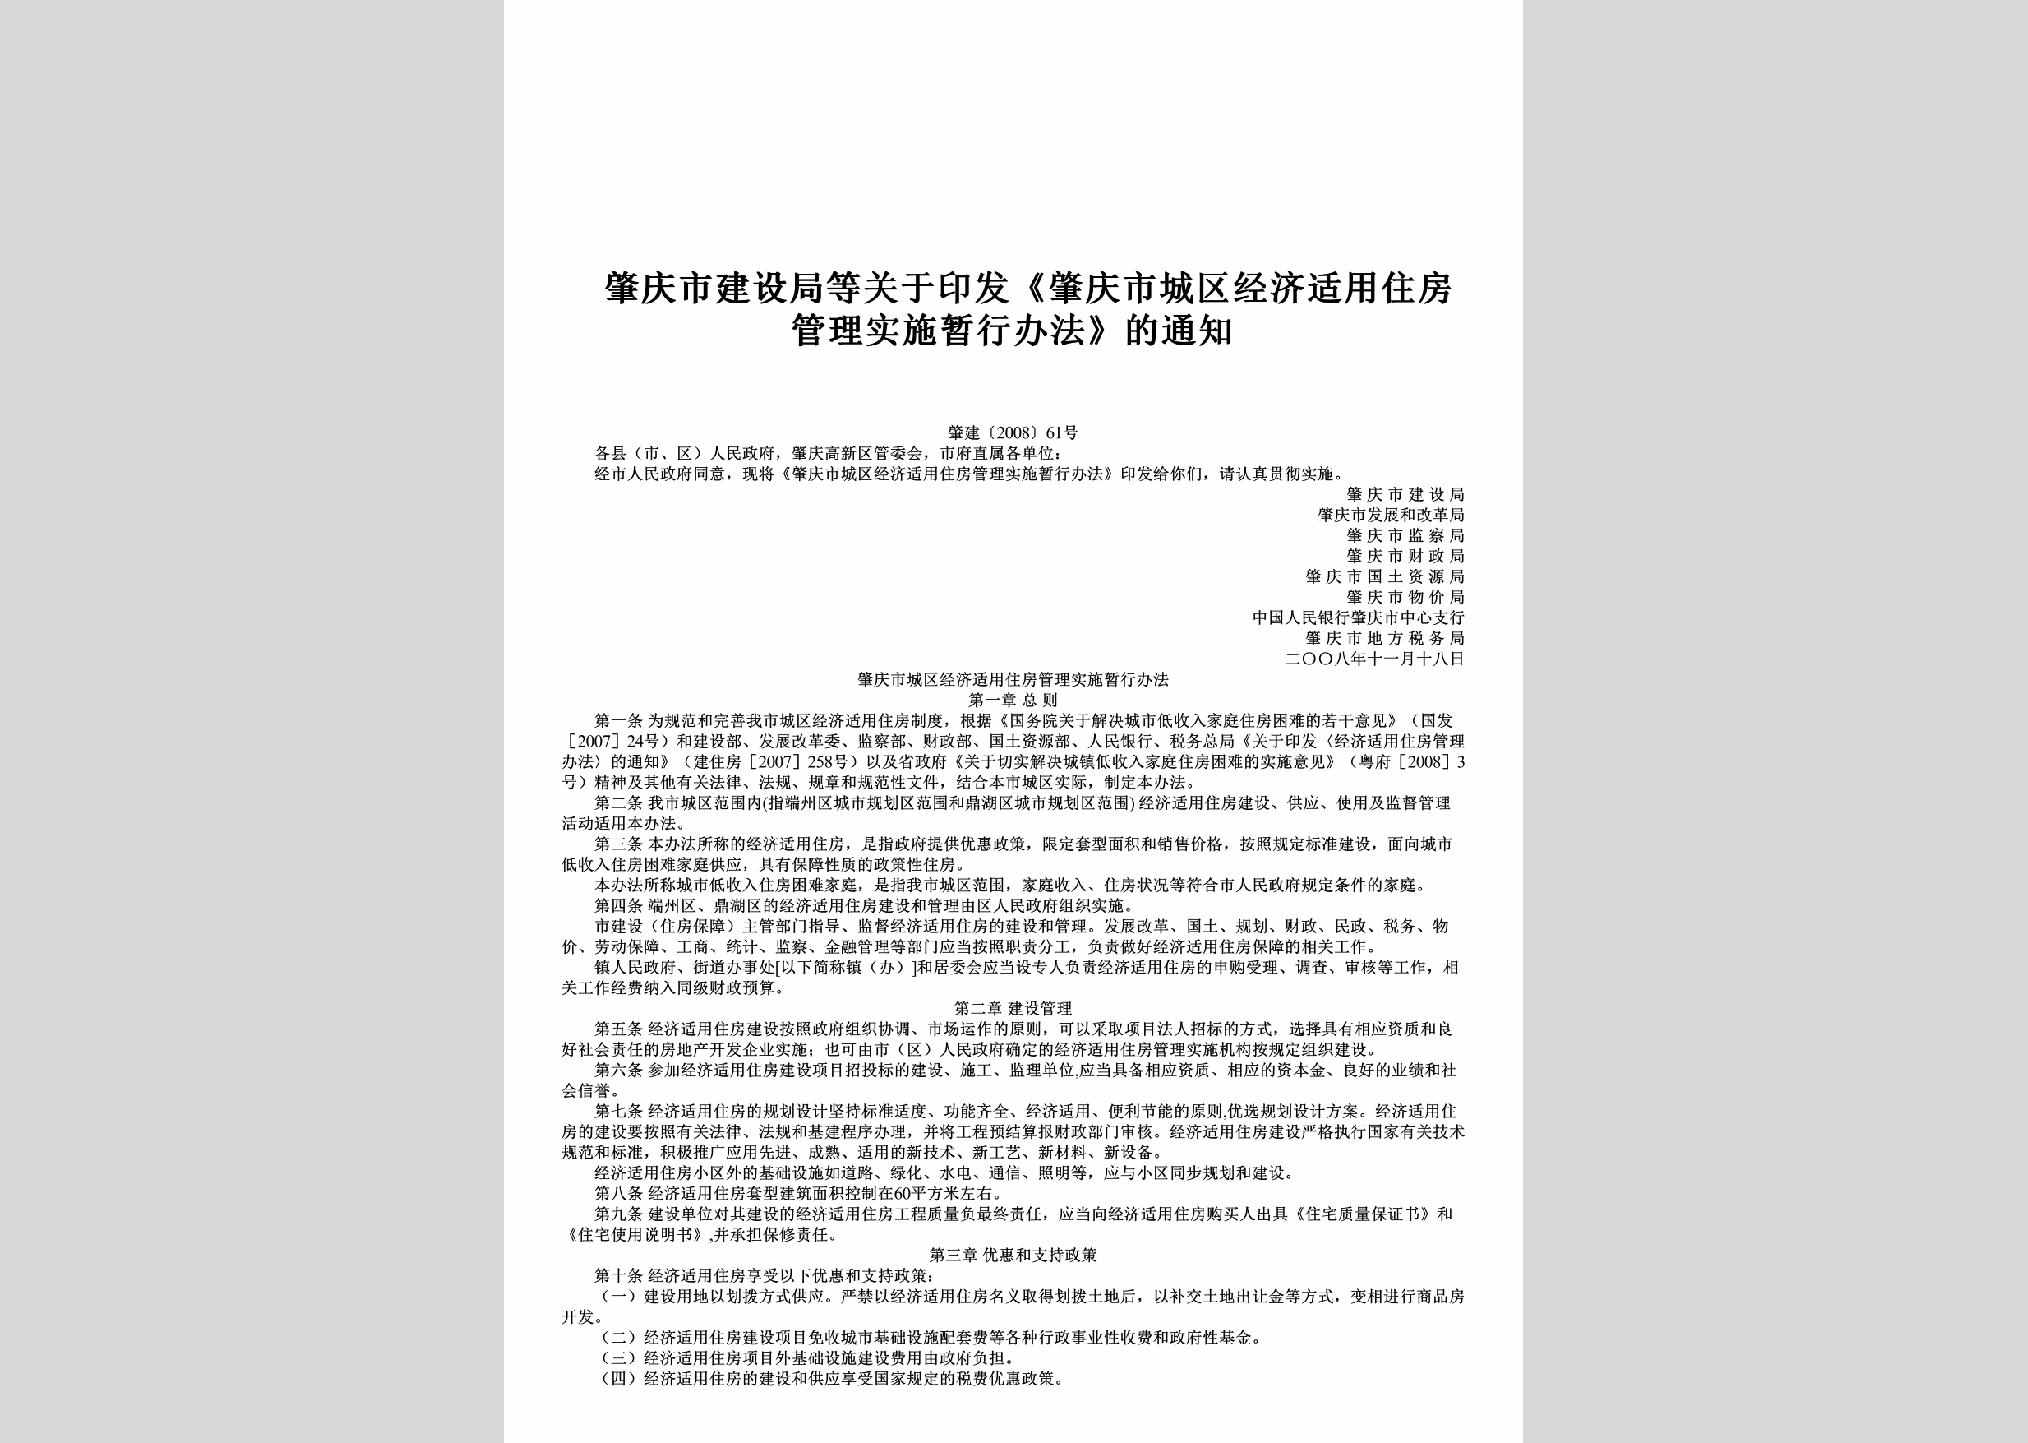 肇建[2008]61号：关于印发《肇庆市城区经济适用住房管理实施暂行办法》的通知